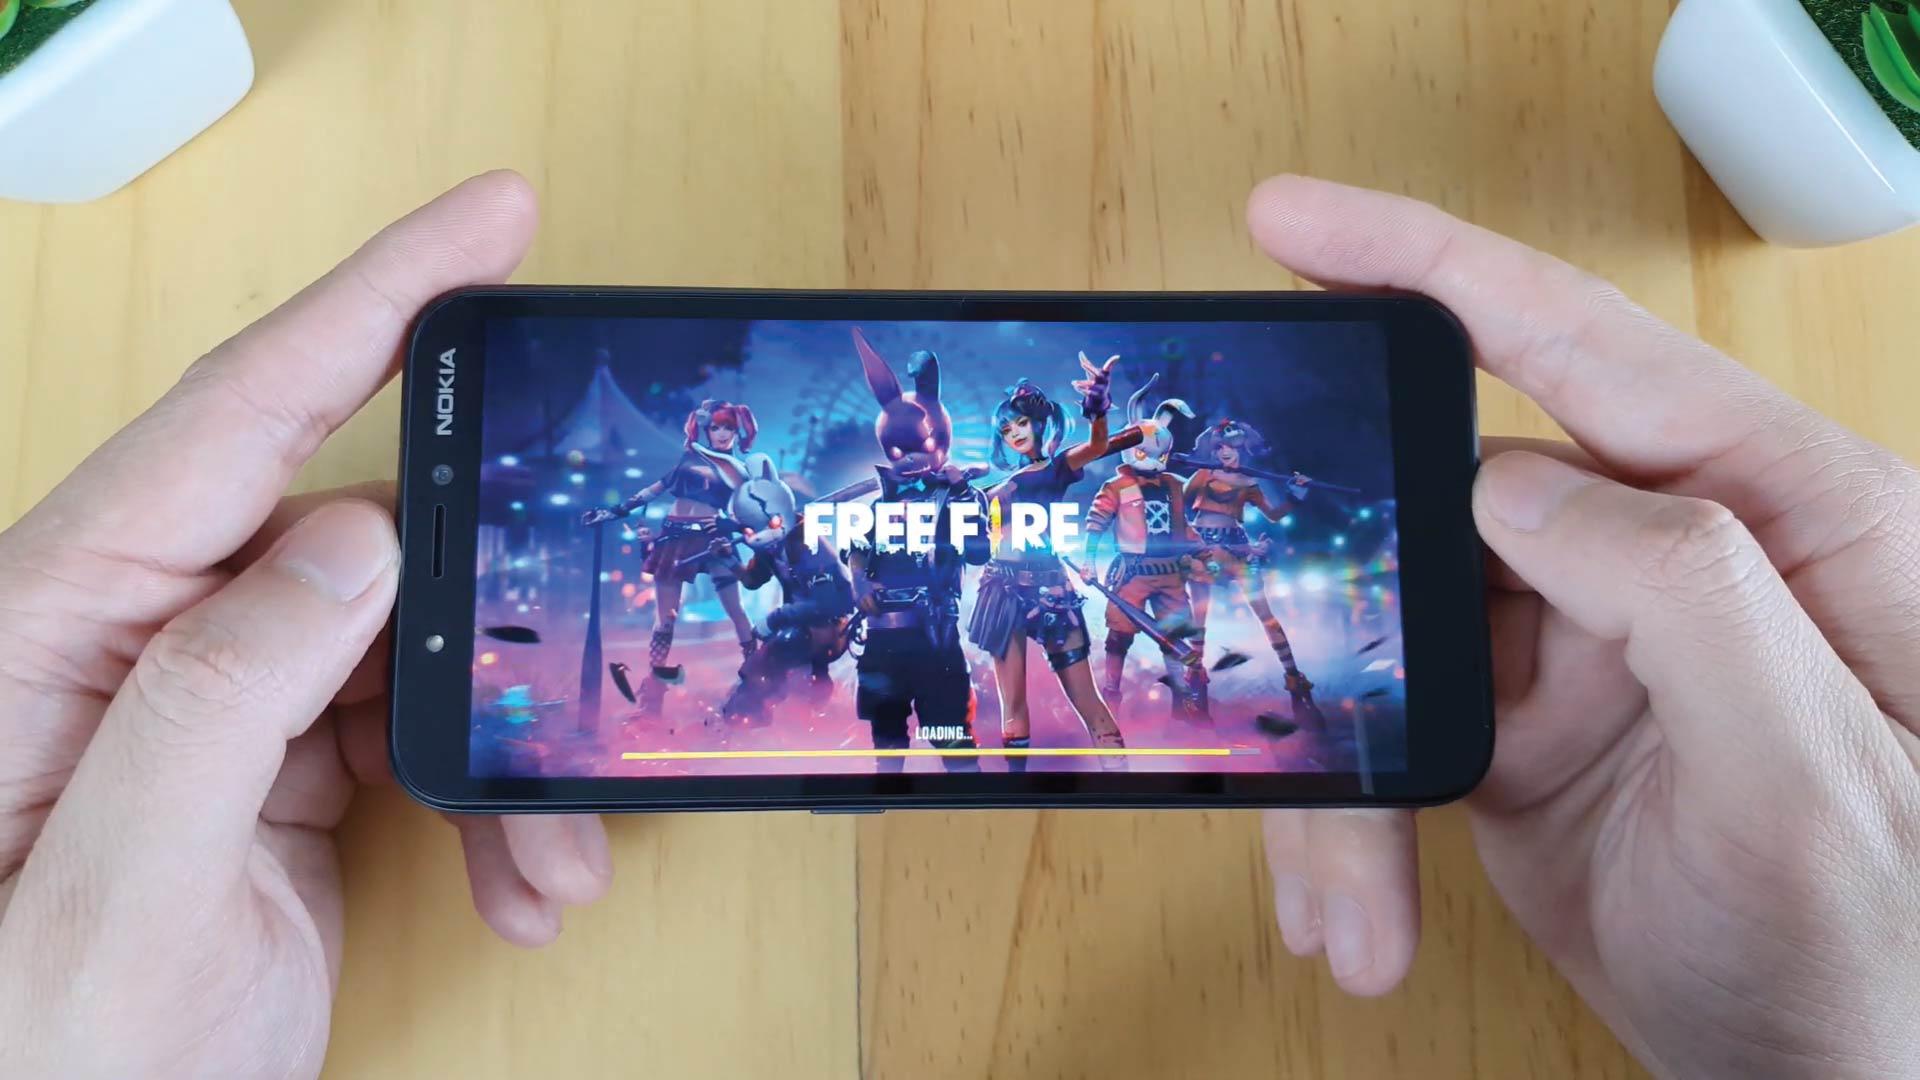 Melhores celulares para jogar Free Fire: veja opções para 2022